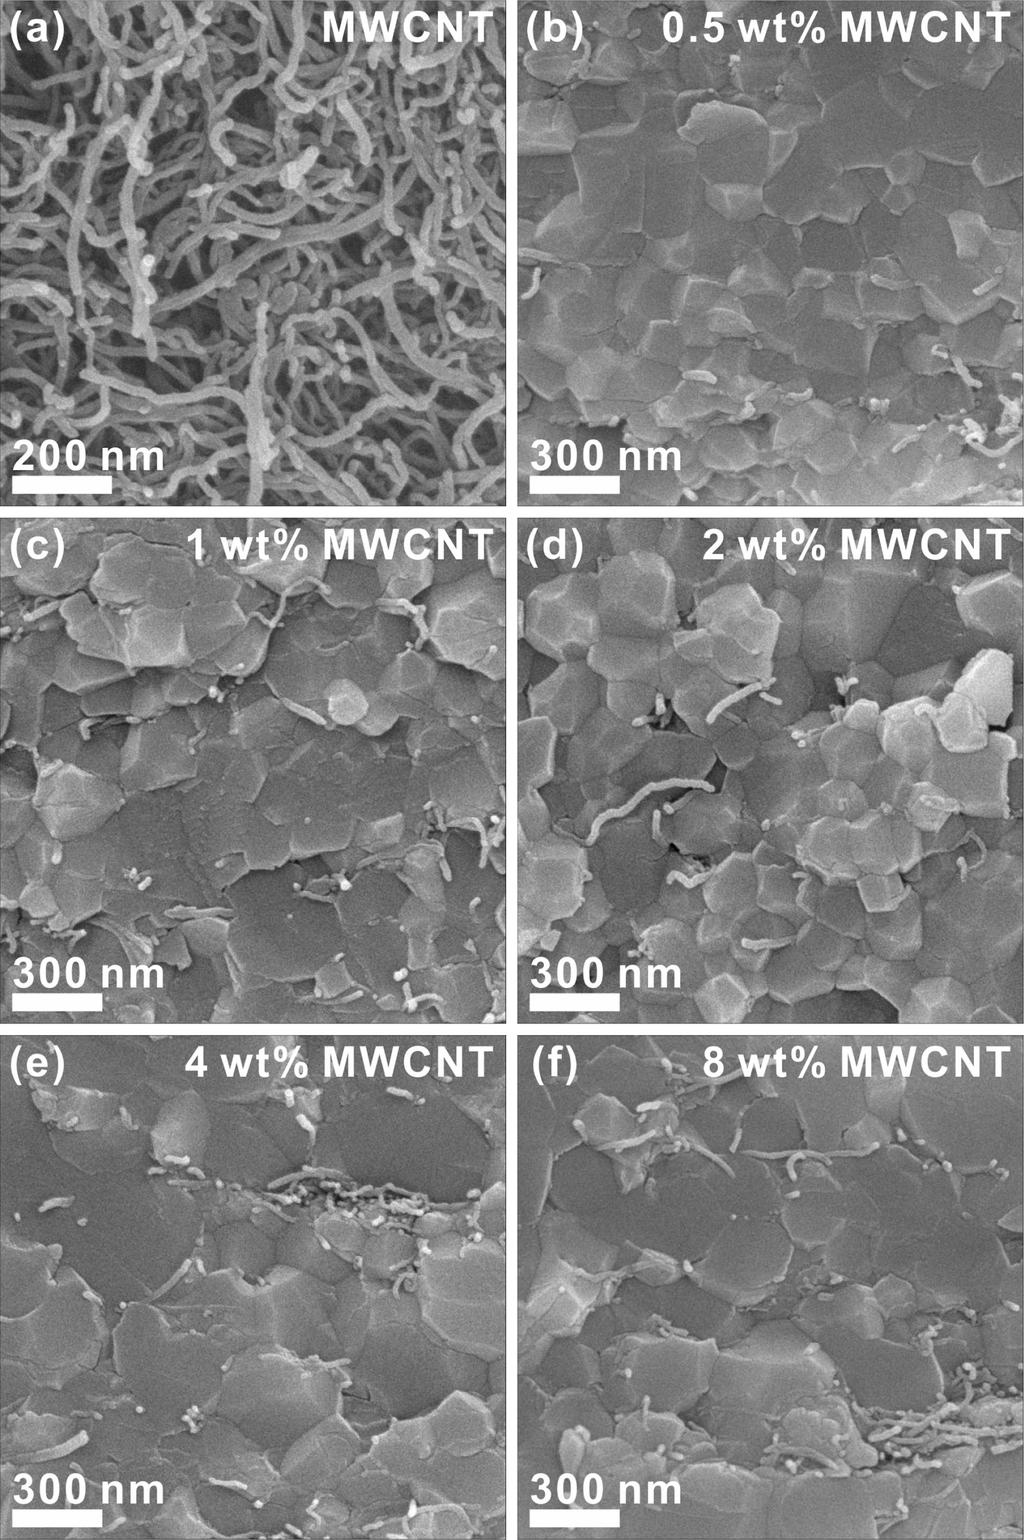 540 대한금속 재료학회지 제56권 제7호 (2018년 7월) Fig. 1. SEM micrographs of (a) as-received MWCNT and (b)-(f) fractured surfaces of TiO2-MWCNT nanocomposites with 0.5, 1, 2, 4 and 8 wt% of MWCNT, respectively. Fig. 3.